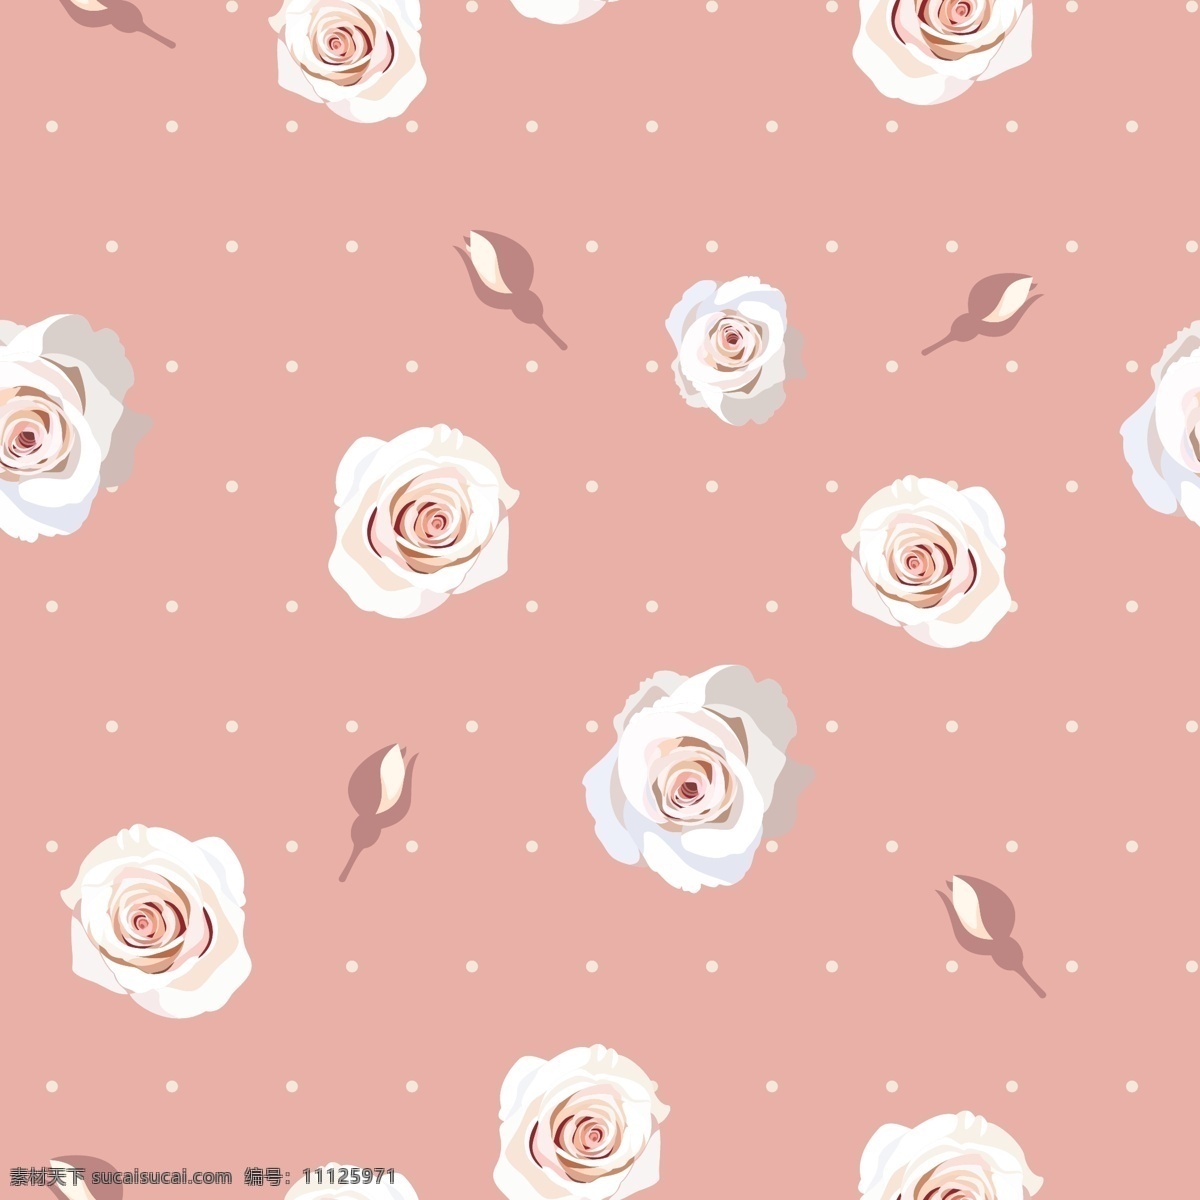 白色 波 点 花朵 纹理 图案 矢量 背景 白色波点 粉色花朵 玫瑰花 粉红色 海报背景 无缝背景